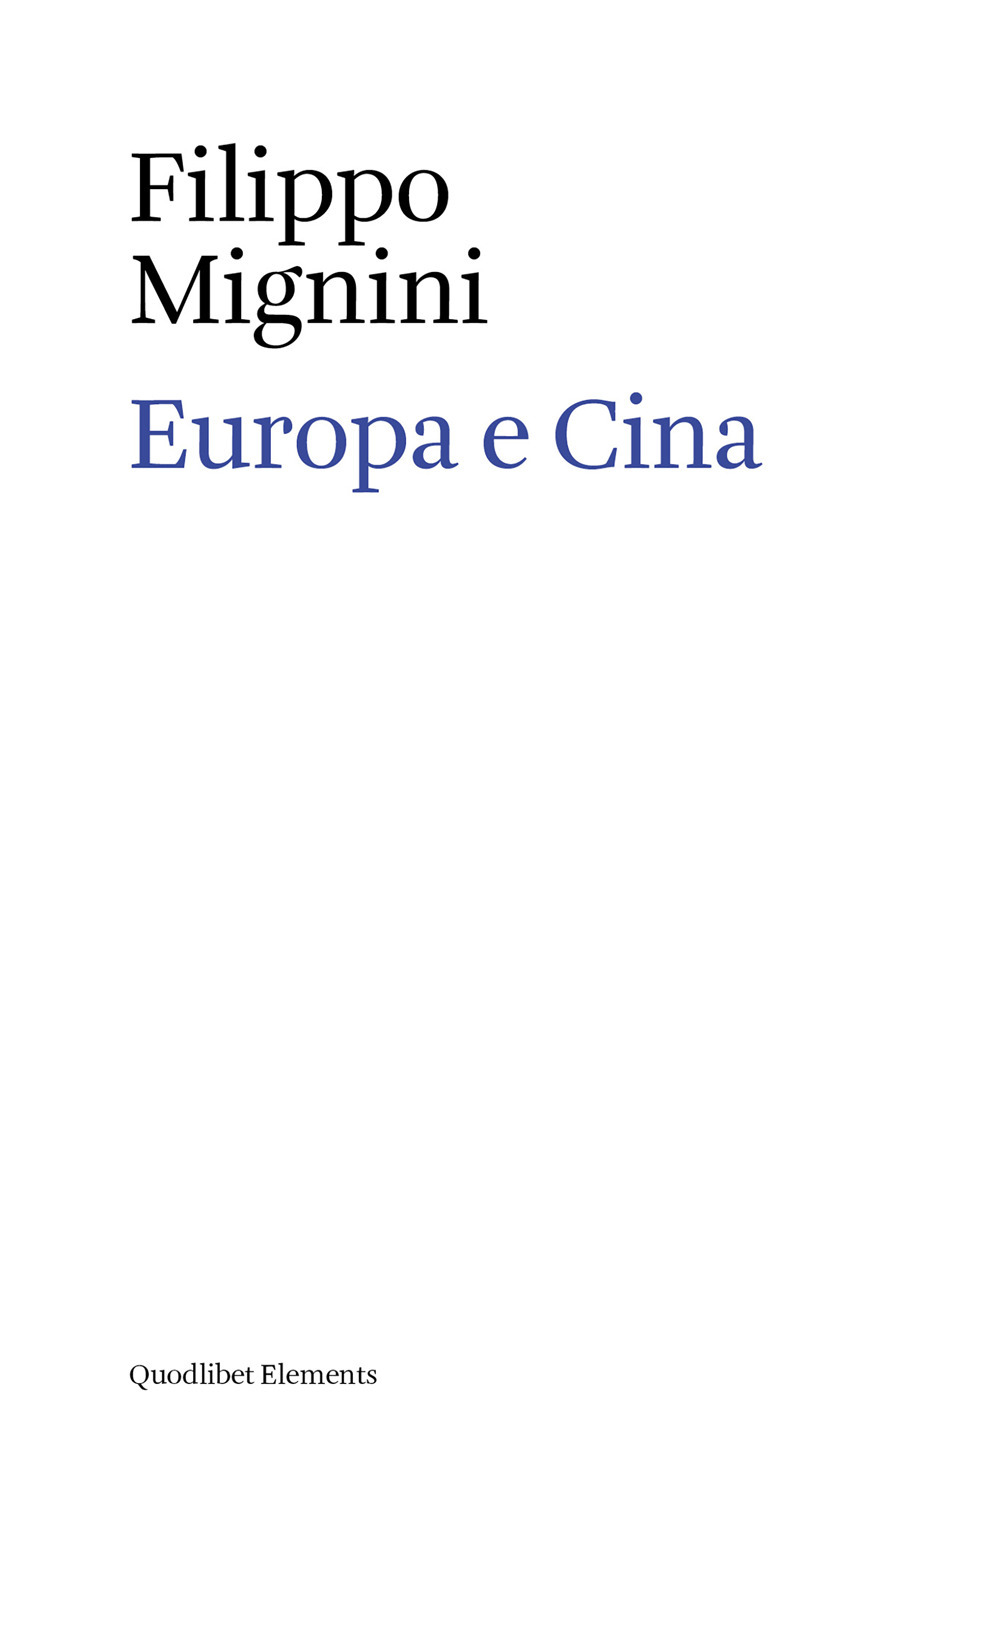 EUROPA E CINA - 9788822904188